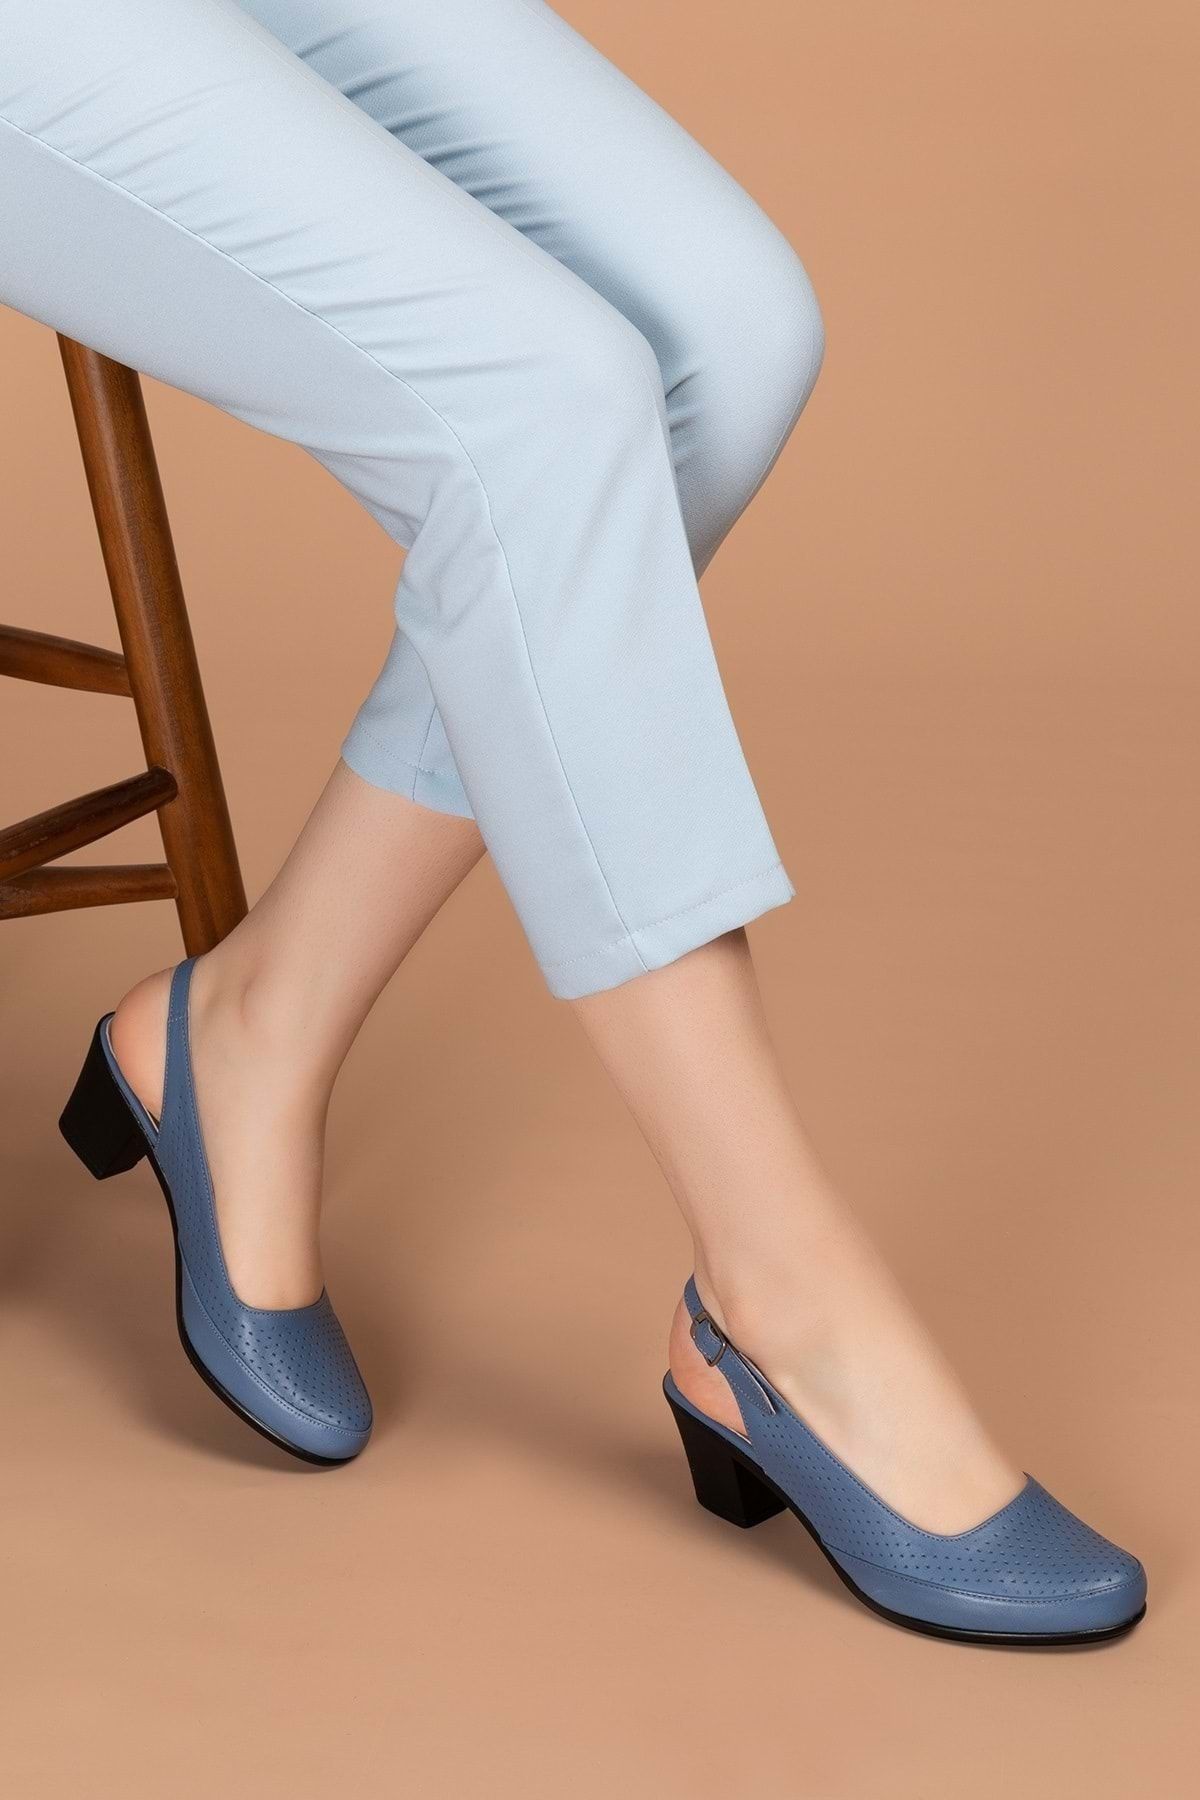 Gondol Kadın Hakiki Deri Klasik Topuklu Ayakkabı Vdt.272 - Mavi - 38